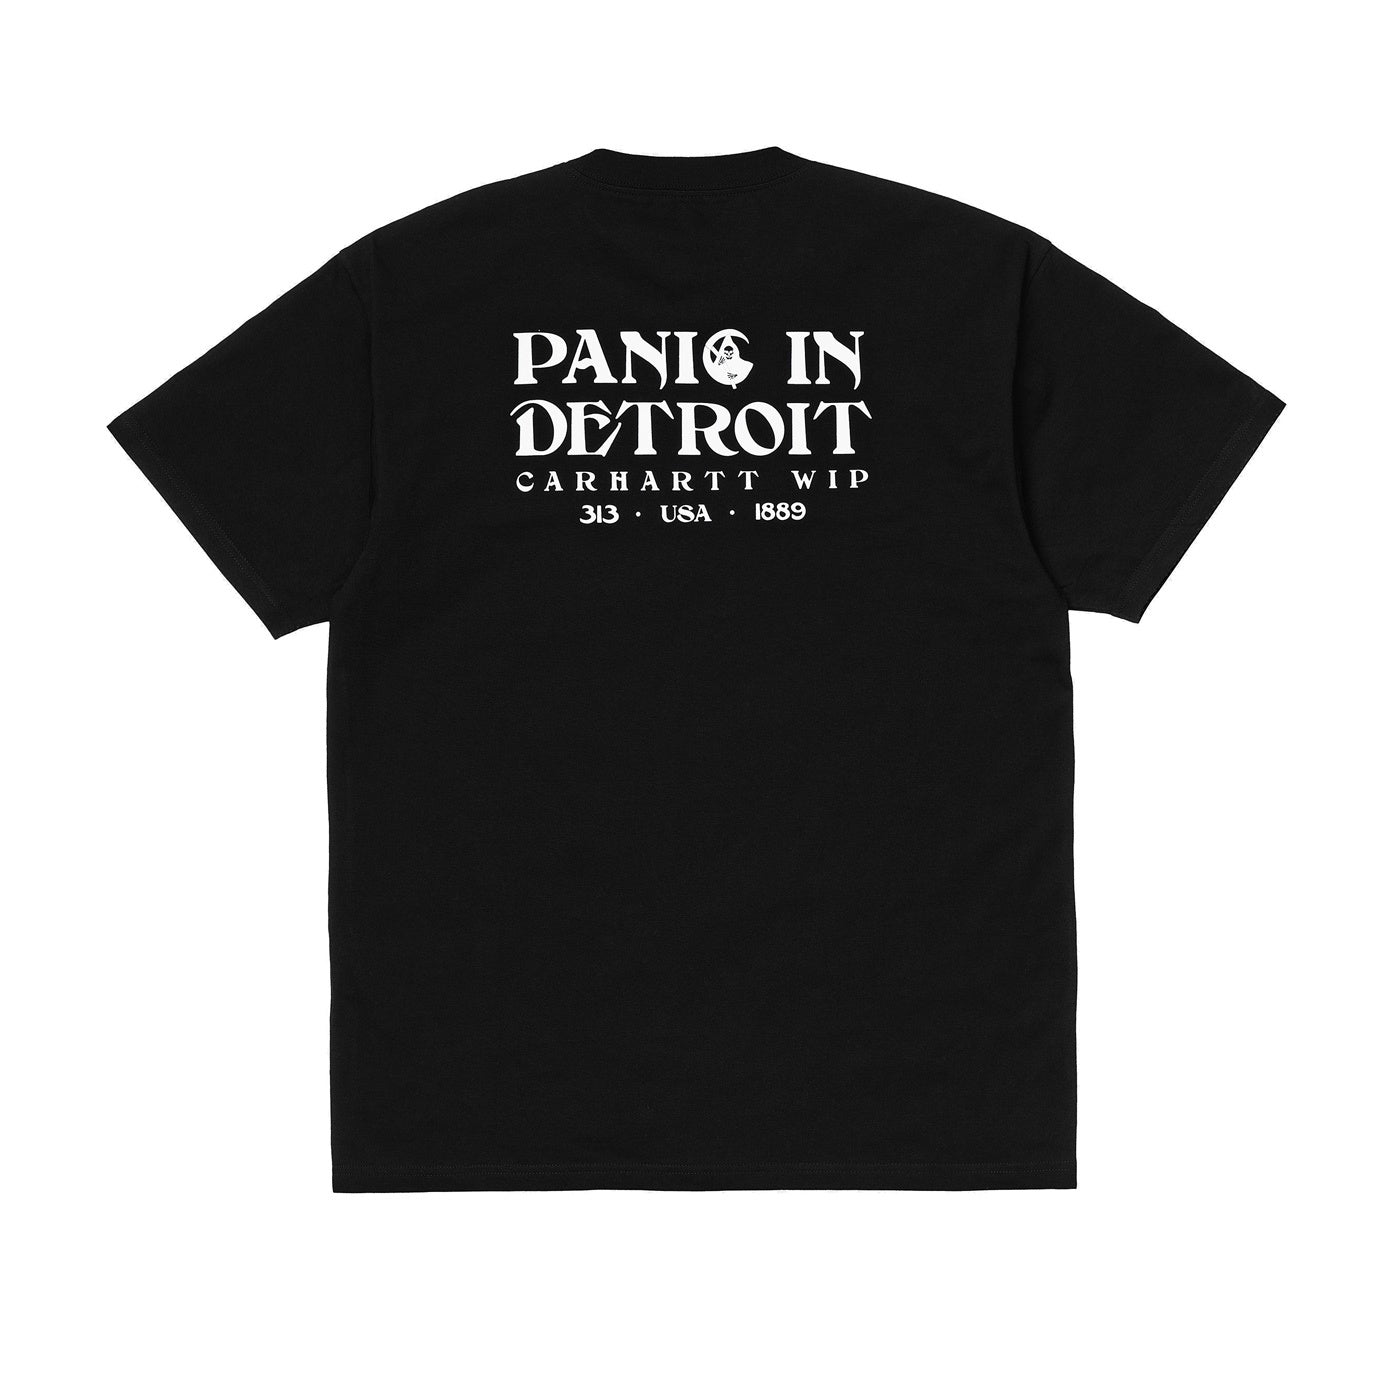 Carhartt WIP S/S Panic T-Shirt Organic Cotton Black/White